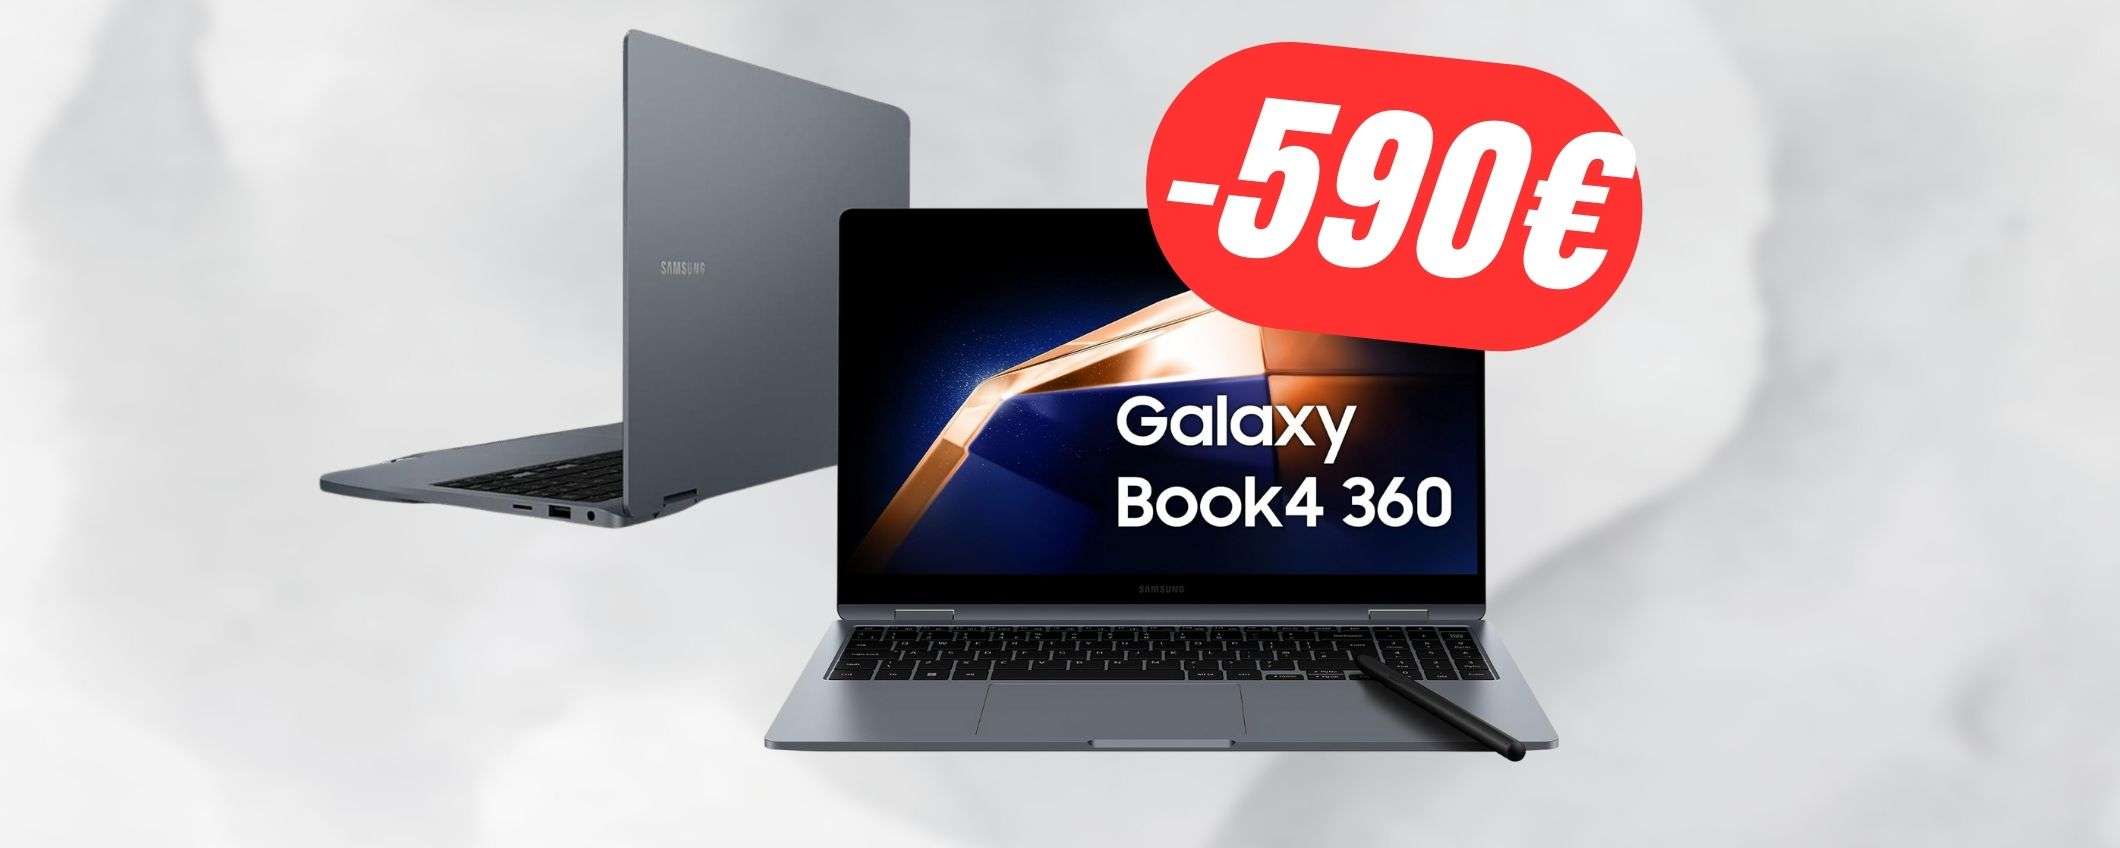 Il nuovissimo Samsung Galaxy Book4 360 è SCONTATO di -590€!!